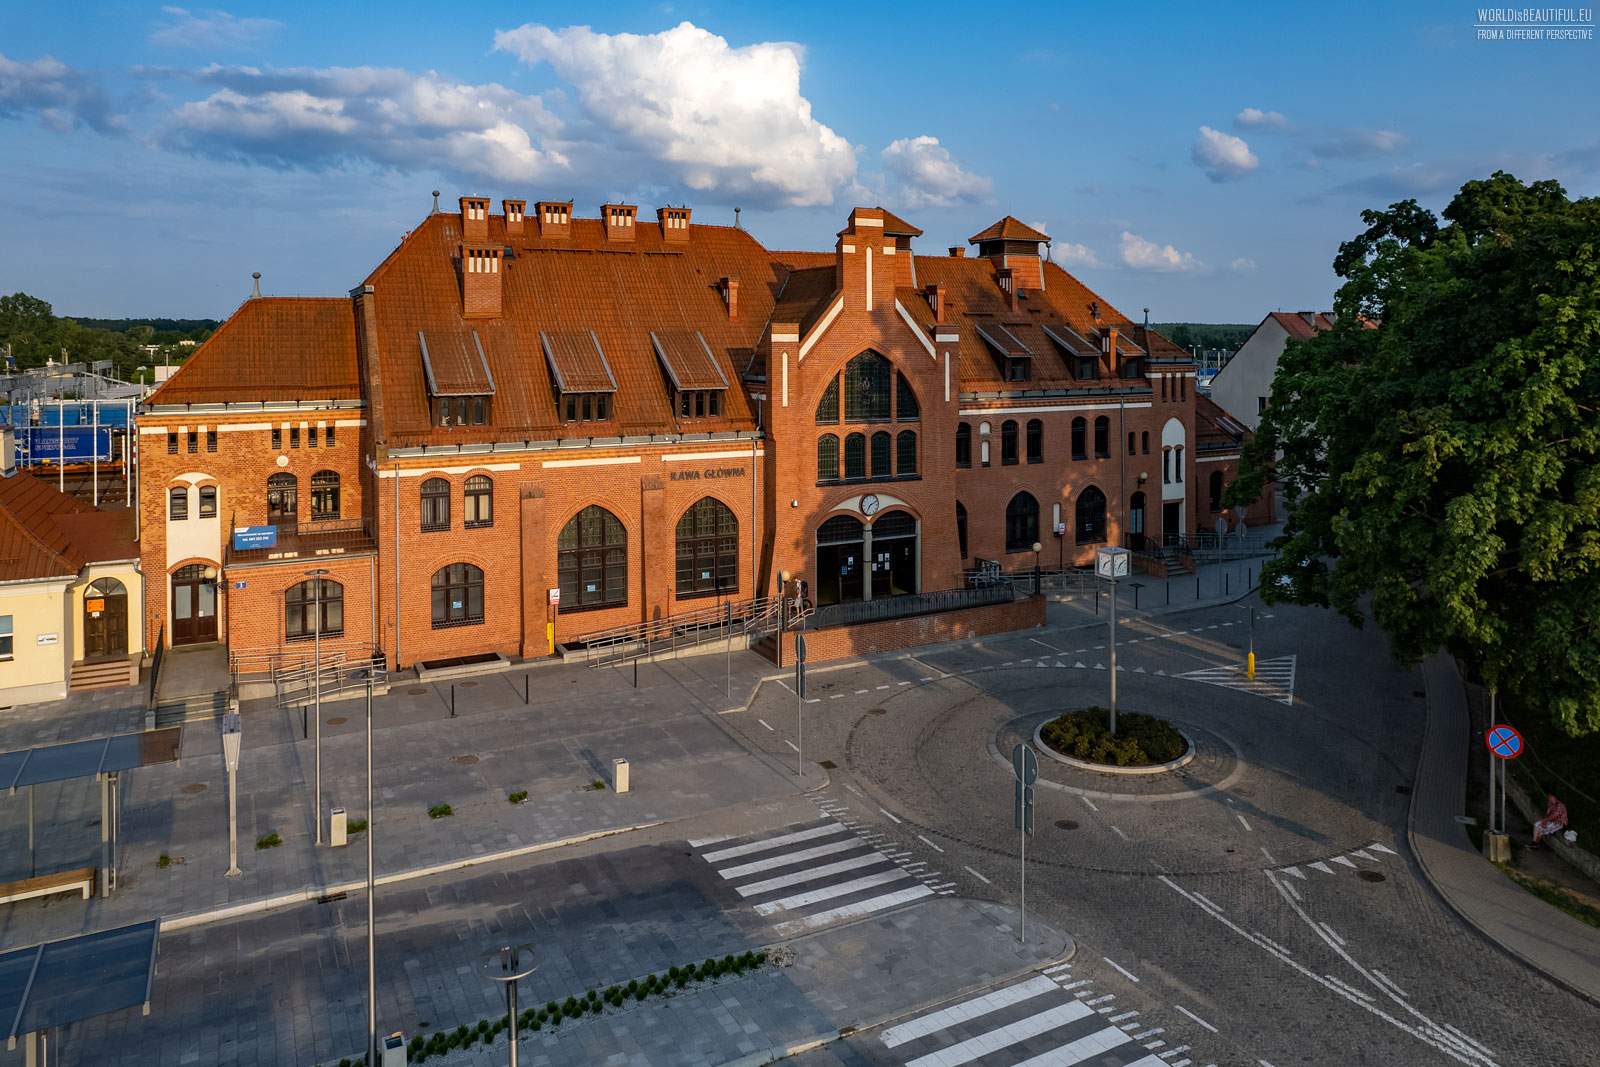 Railway Station - Iława Główna